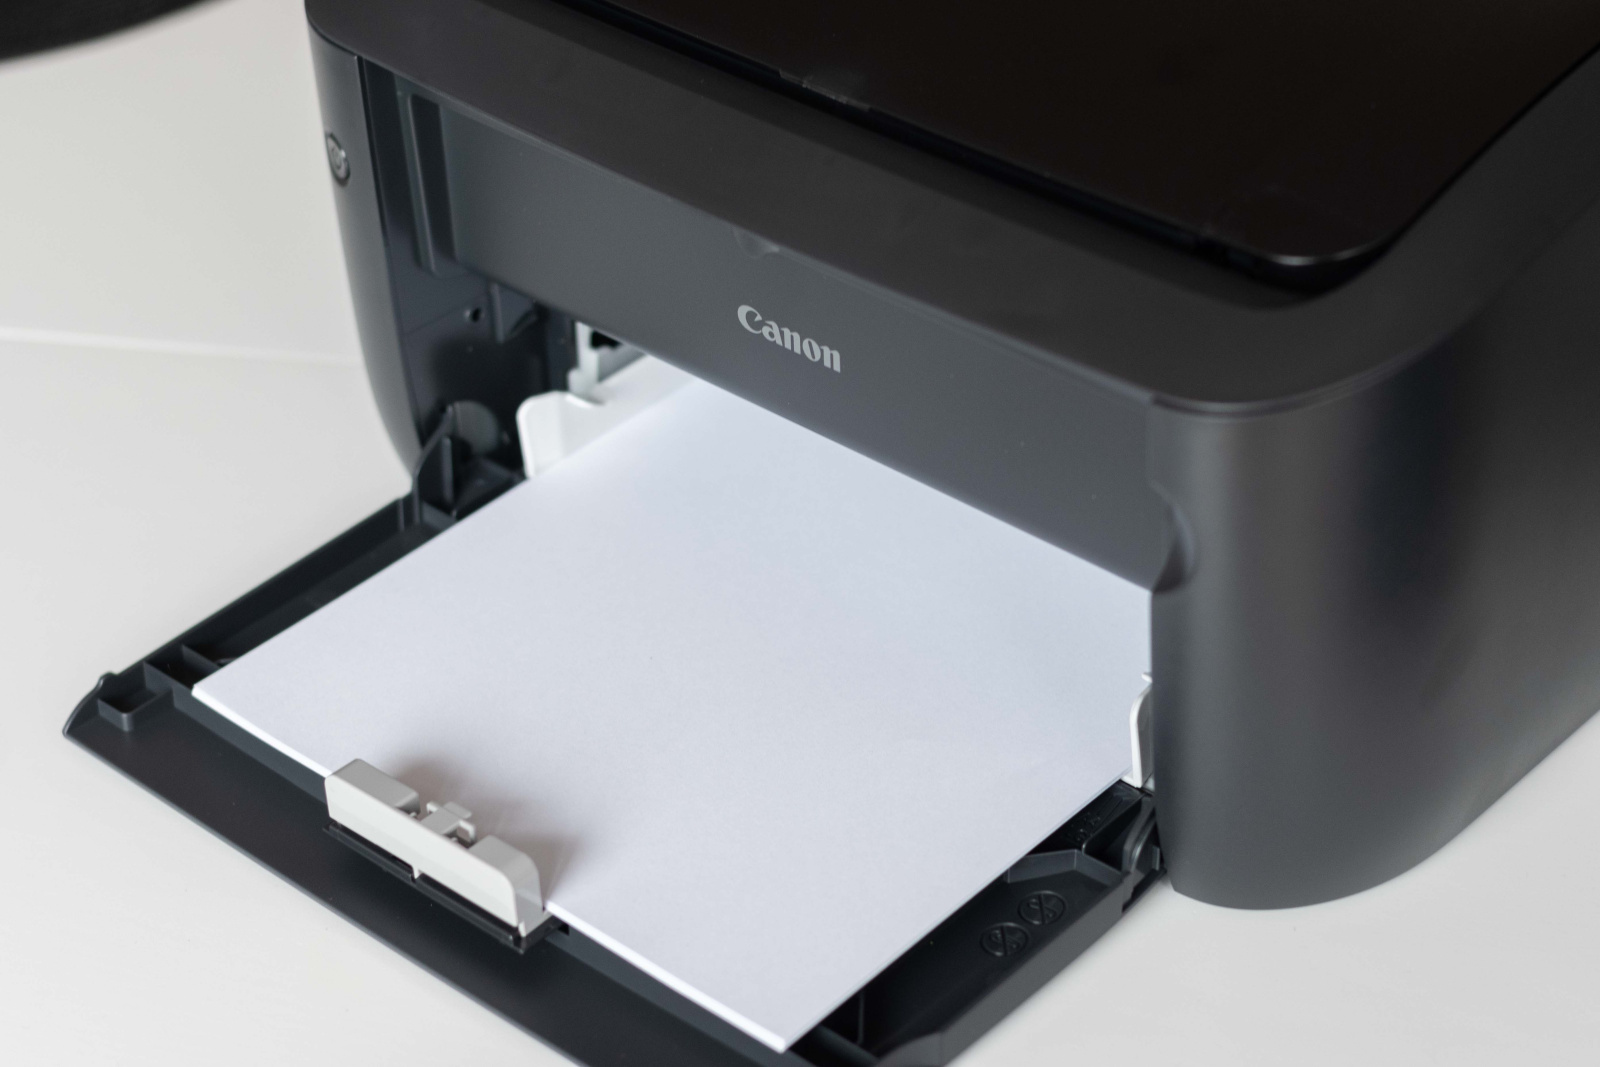 Alimentator de hârtie pentru imprimantă Canon i-SENSYS LBP6030B cu mai multe coli introduse